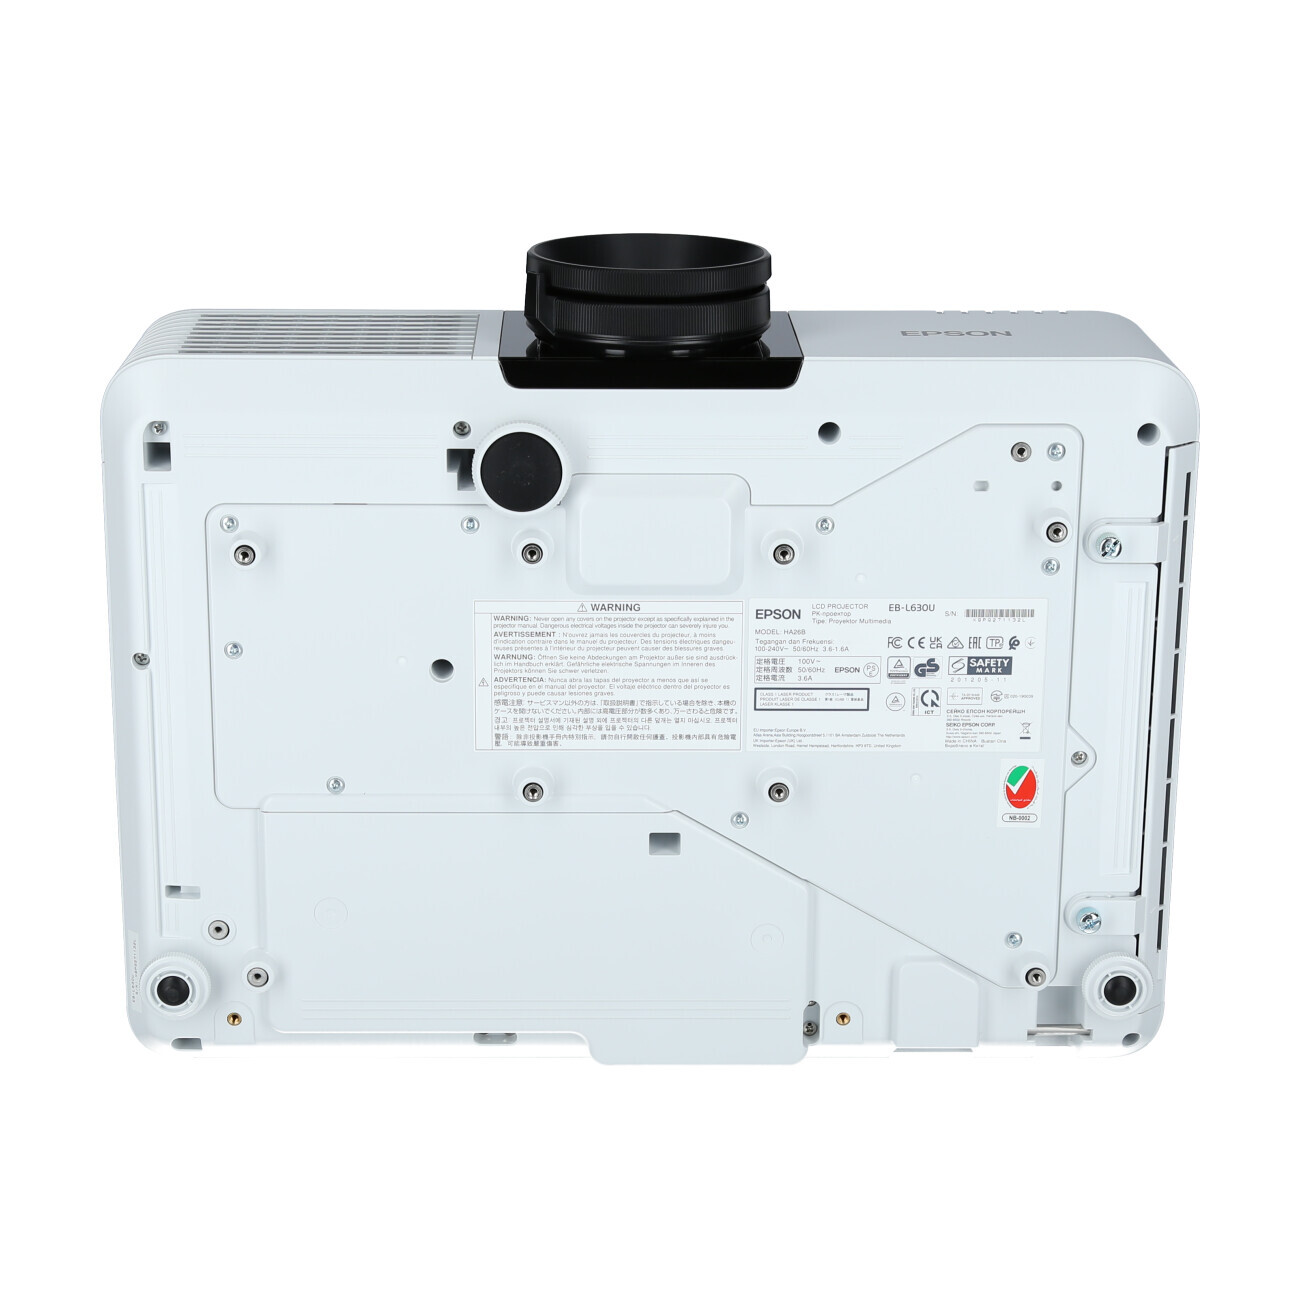 Vorschau: Epson EB-L630U weiß Laser-Beamer mit 6200 ANSI-Lumen und WUXGA Auflösung